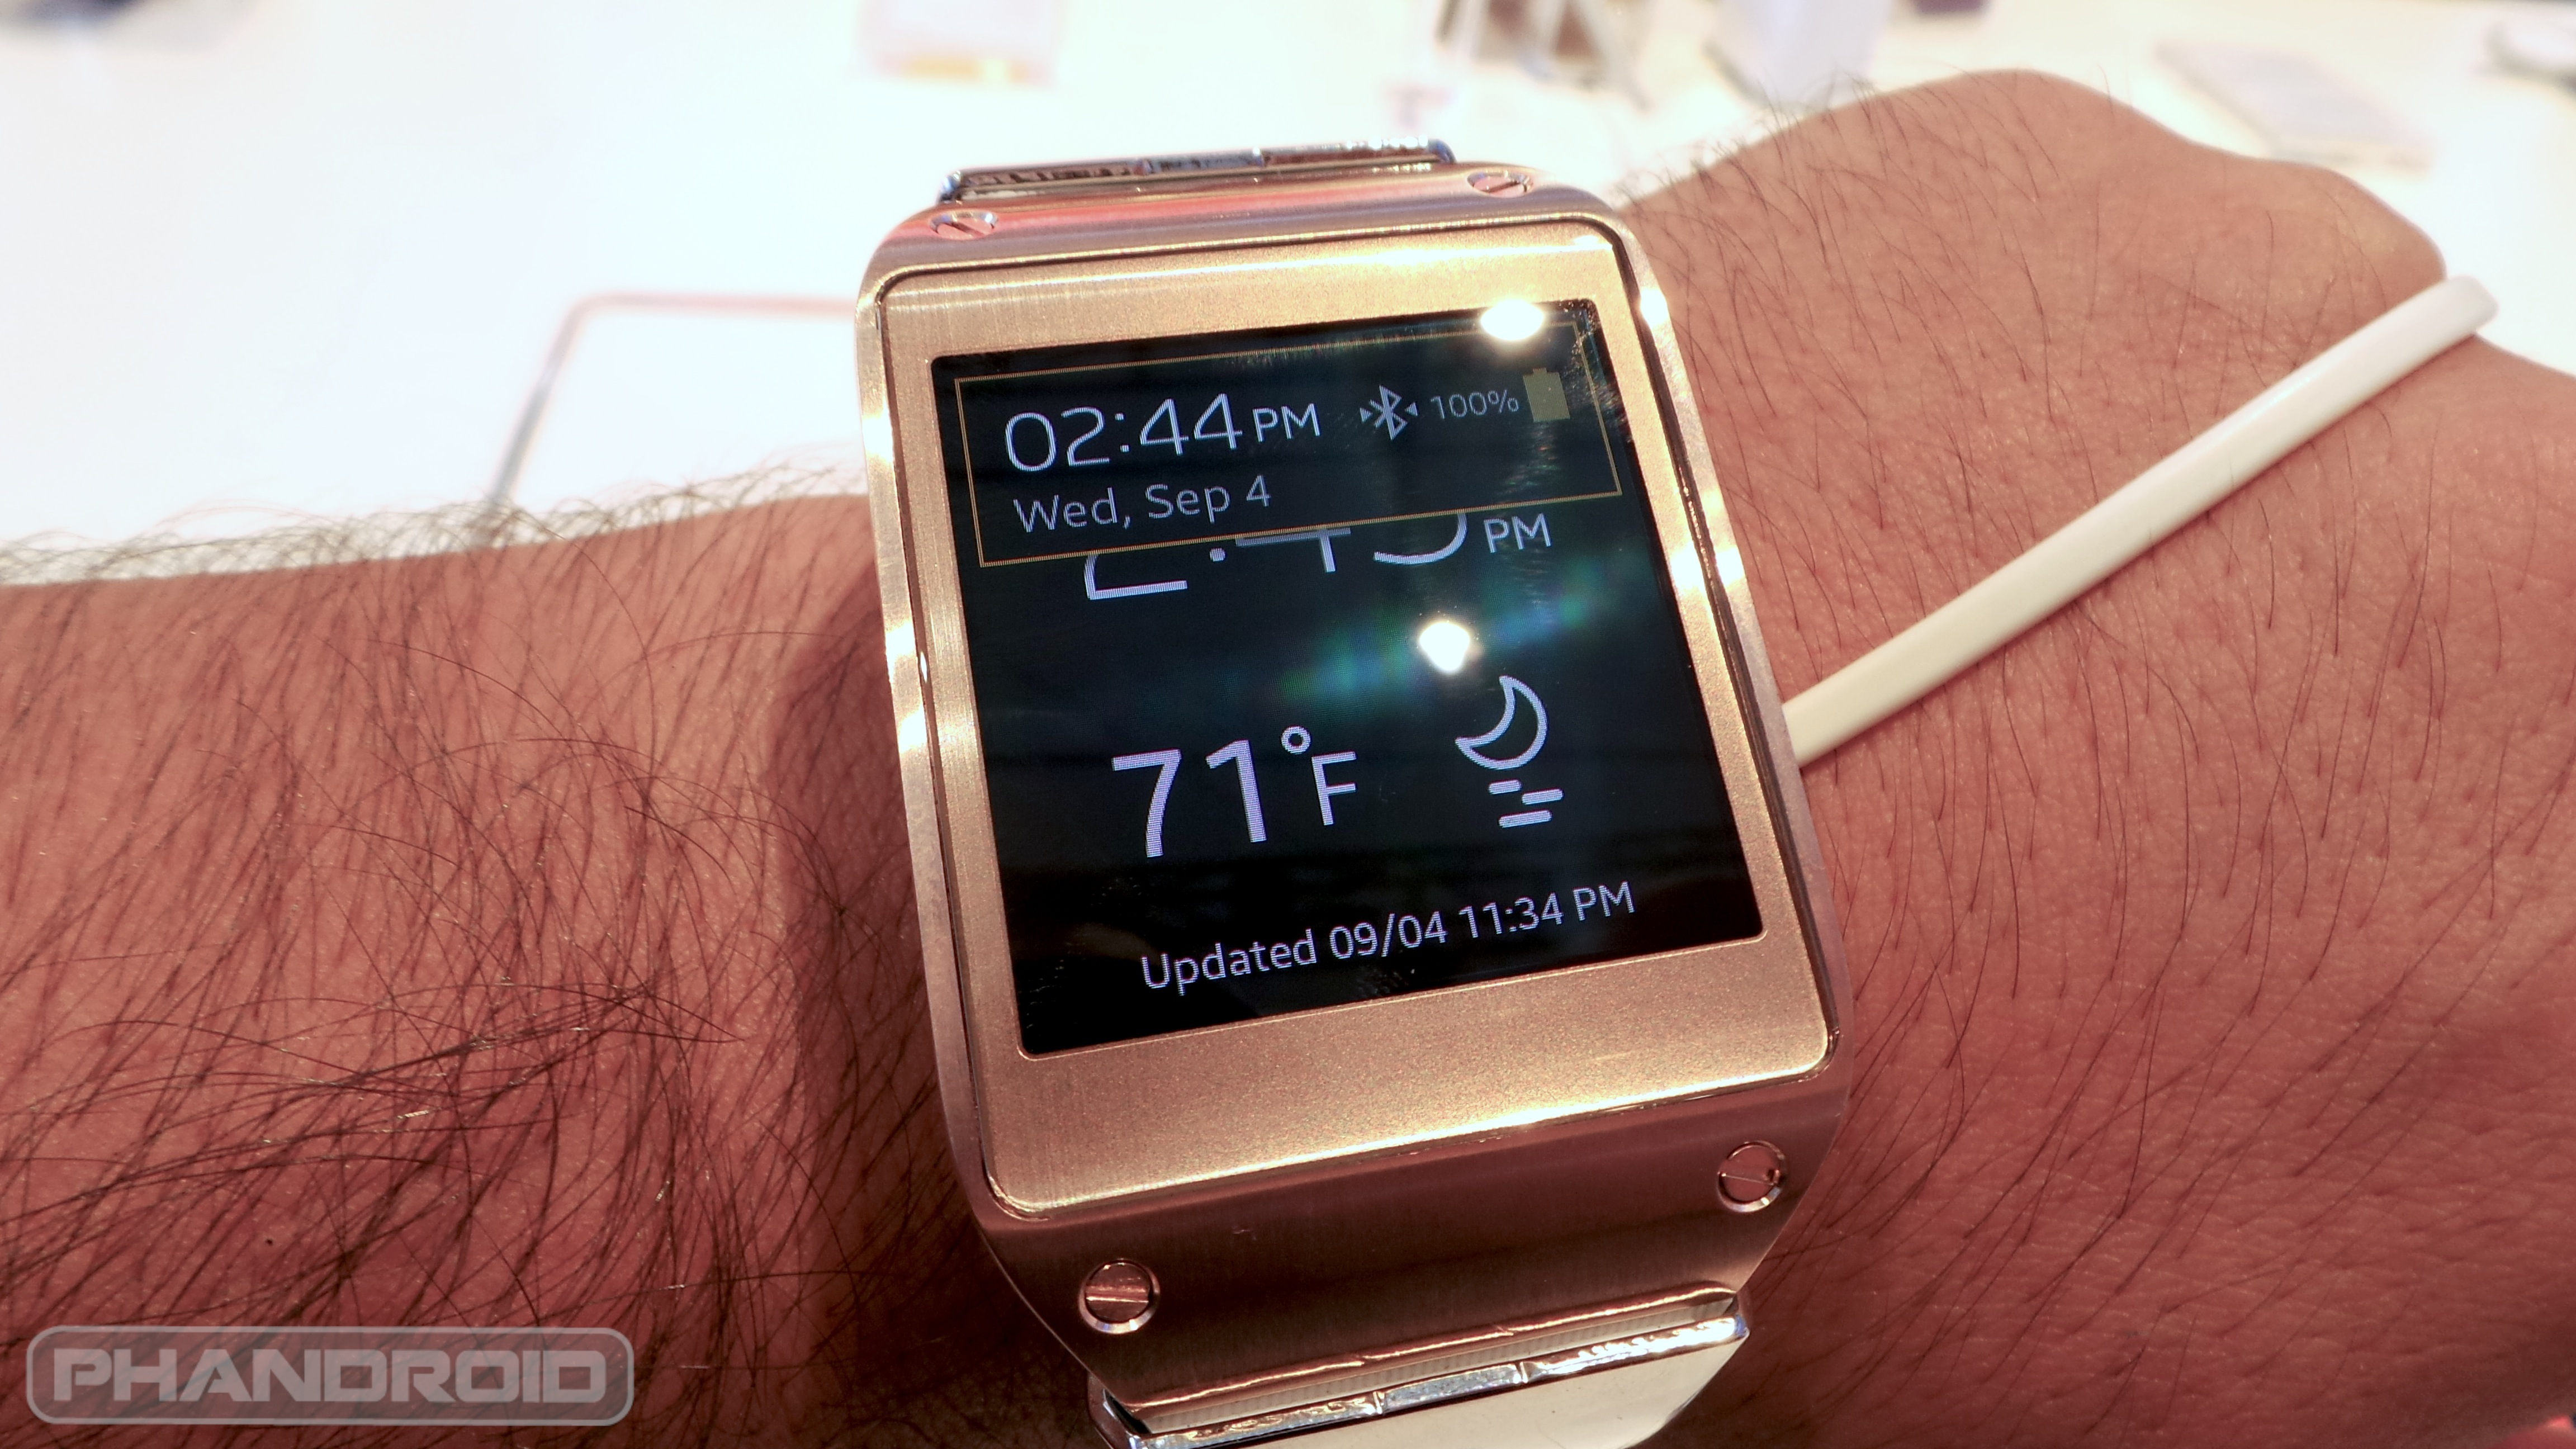 Samsung Galaxy Gear apps revealed, 70 